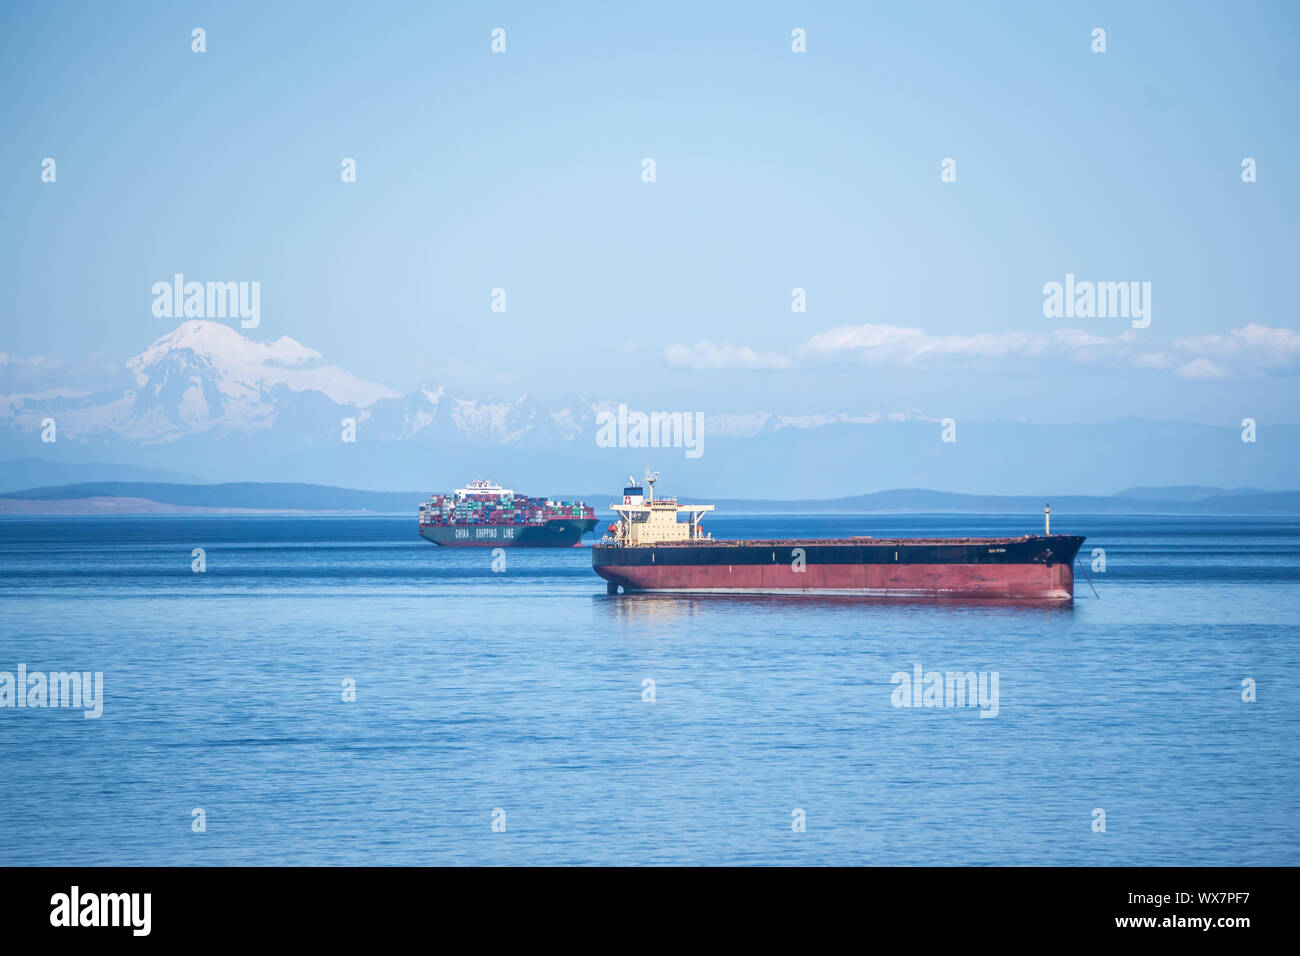 cargo oil tanker ship in the ocean Stock Photo